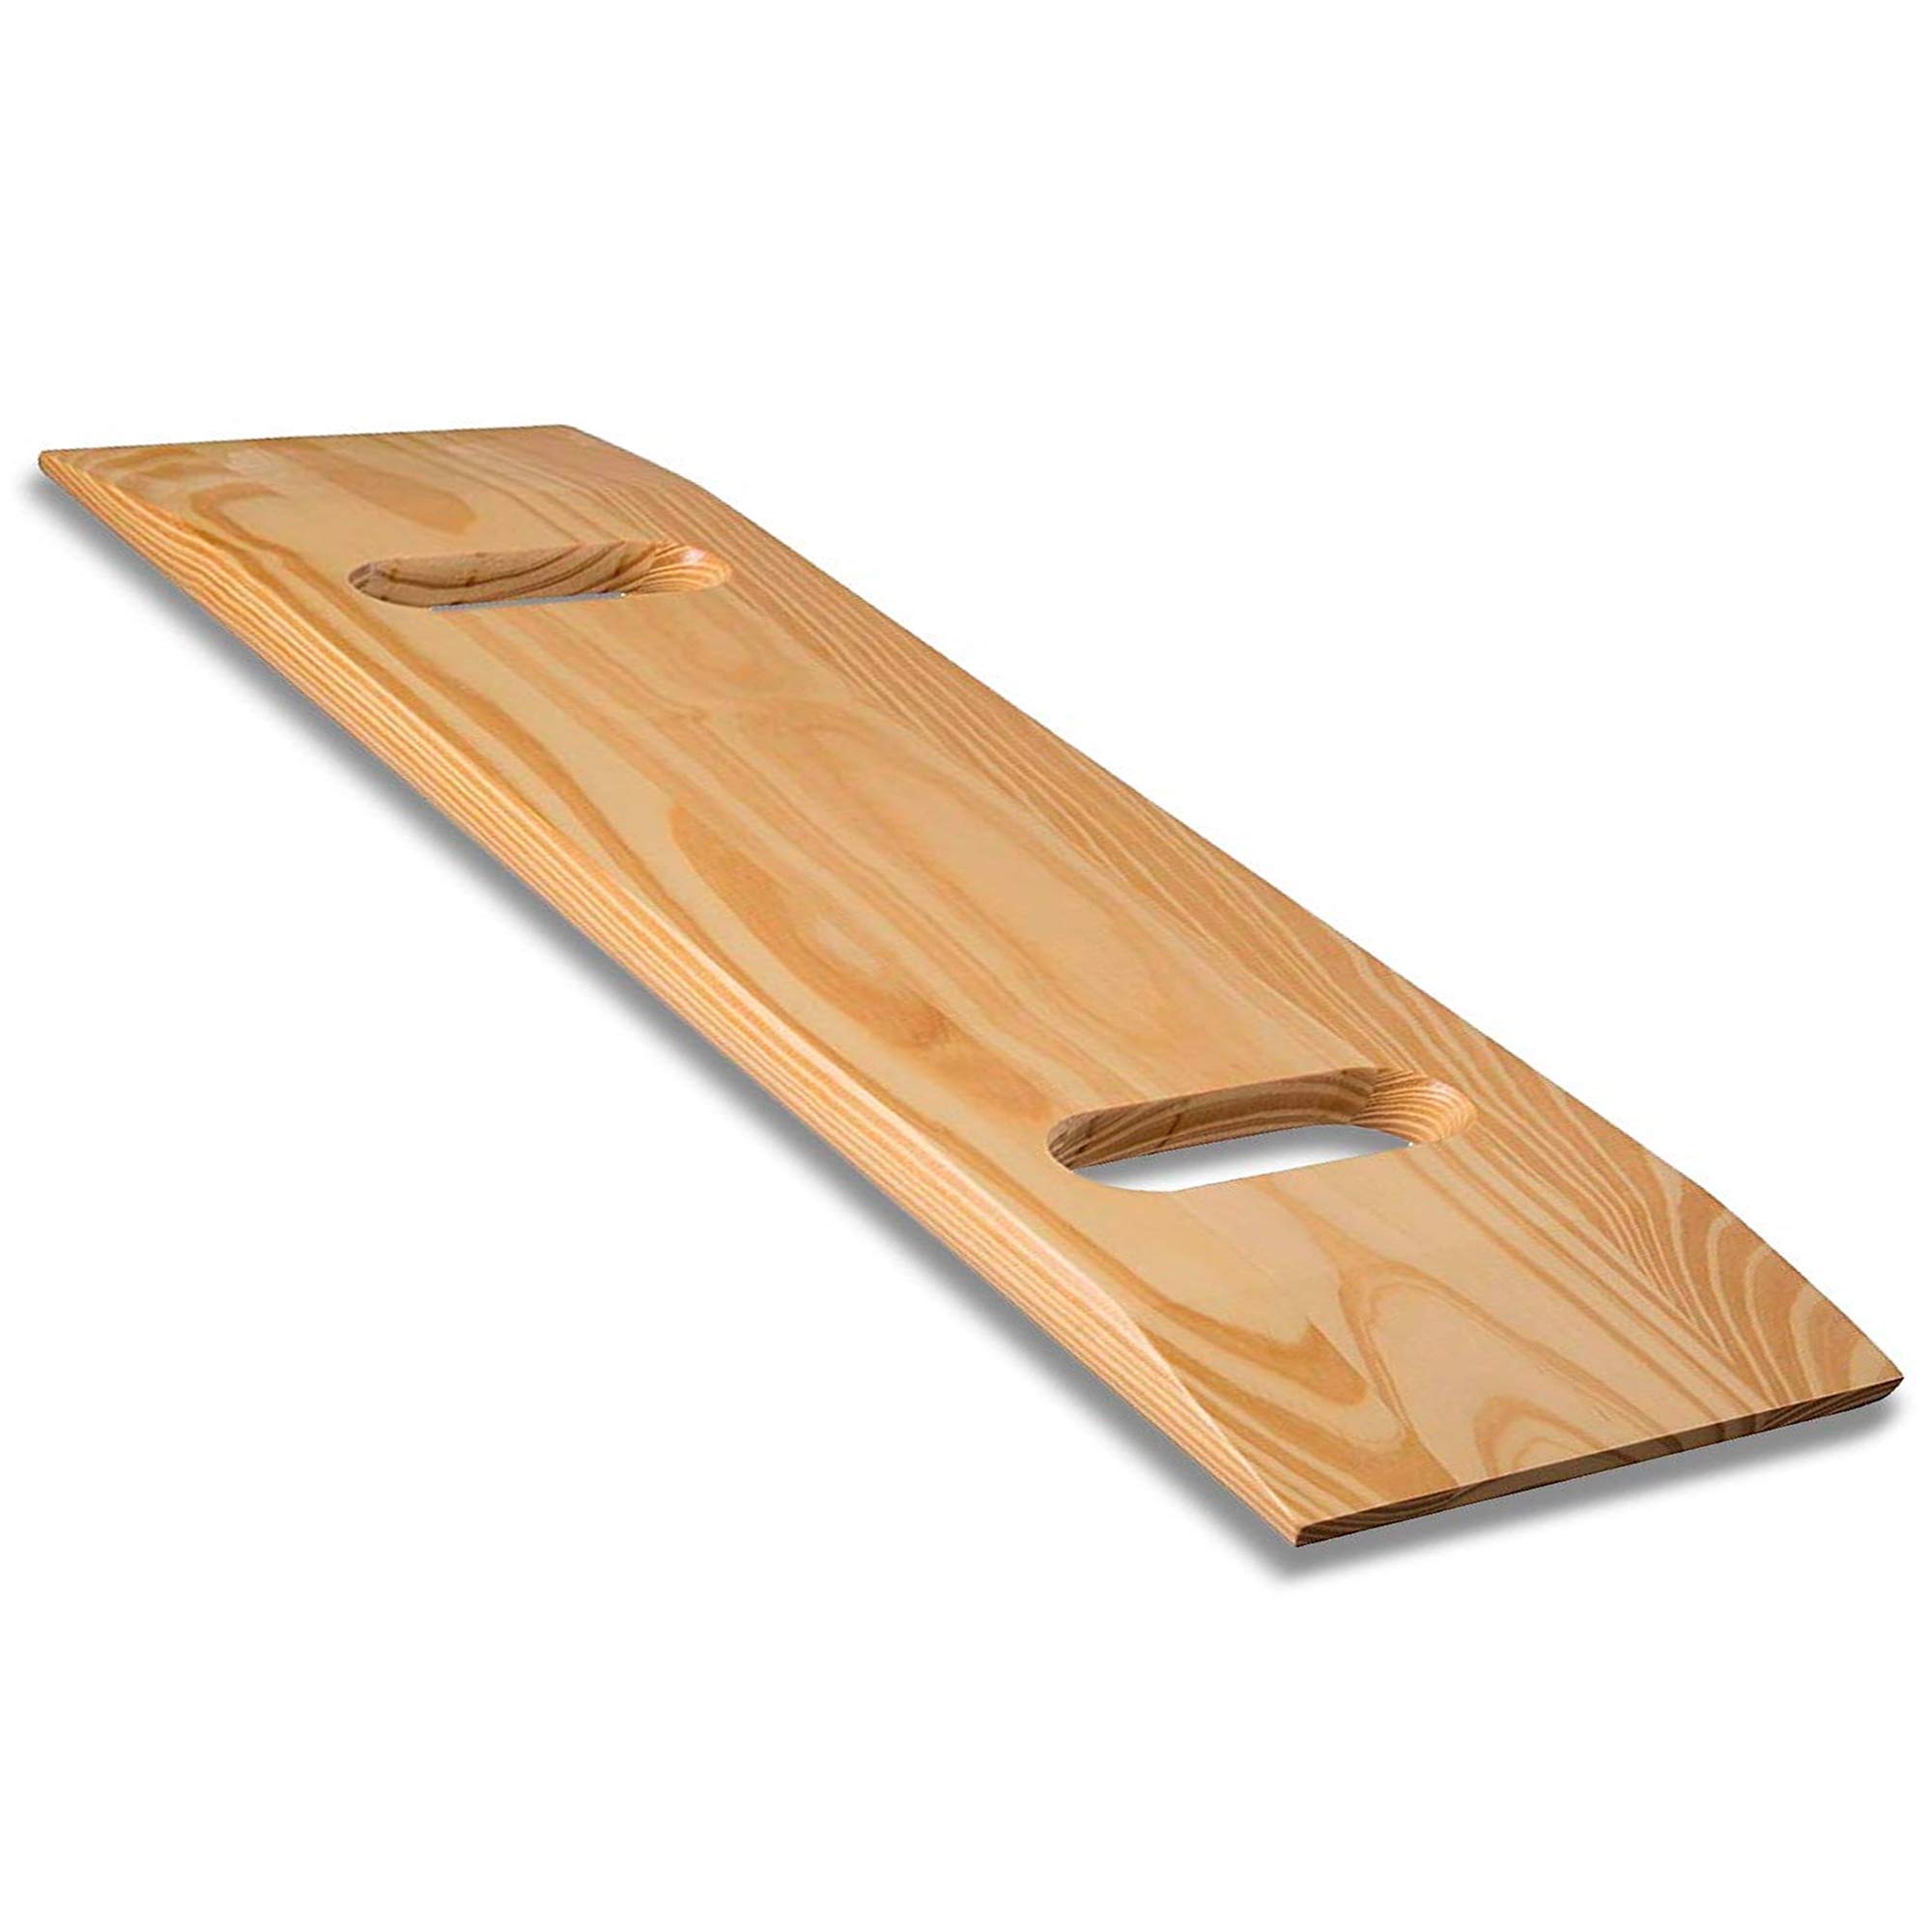 DMI Holz Slide Transferbrett Bariatrisch 333,4 kg Kapazität Heavy Duty Extra Strong Slide Boards für Senioren und Handicap, 32 x 10 x 1 - (2) Cut Out Griffe